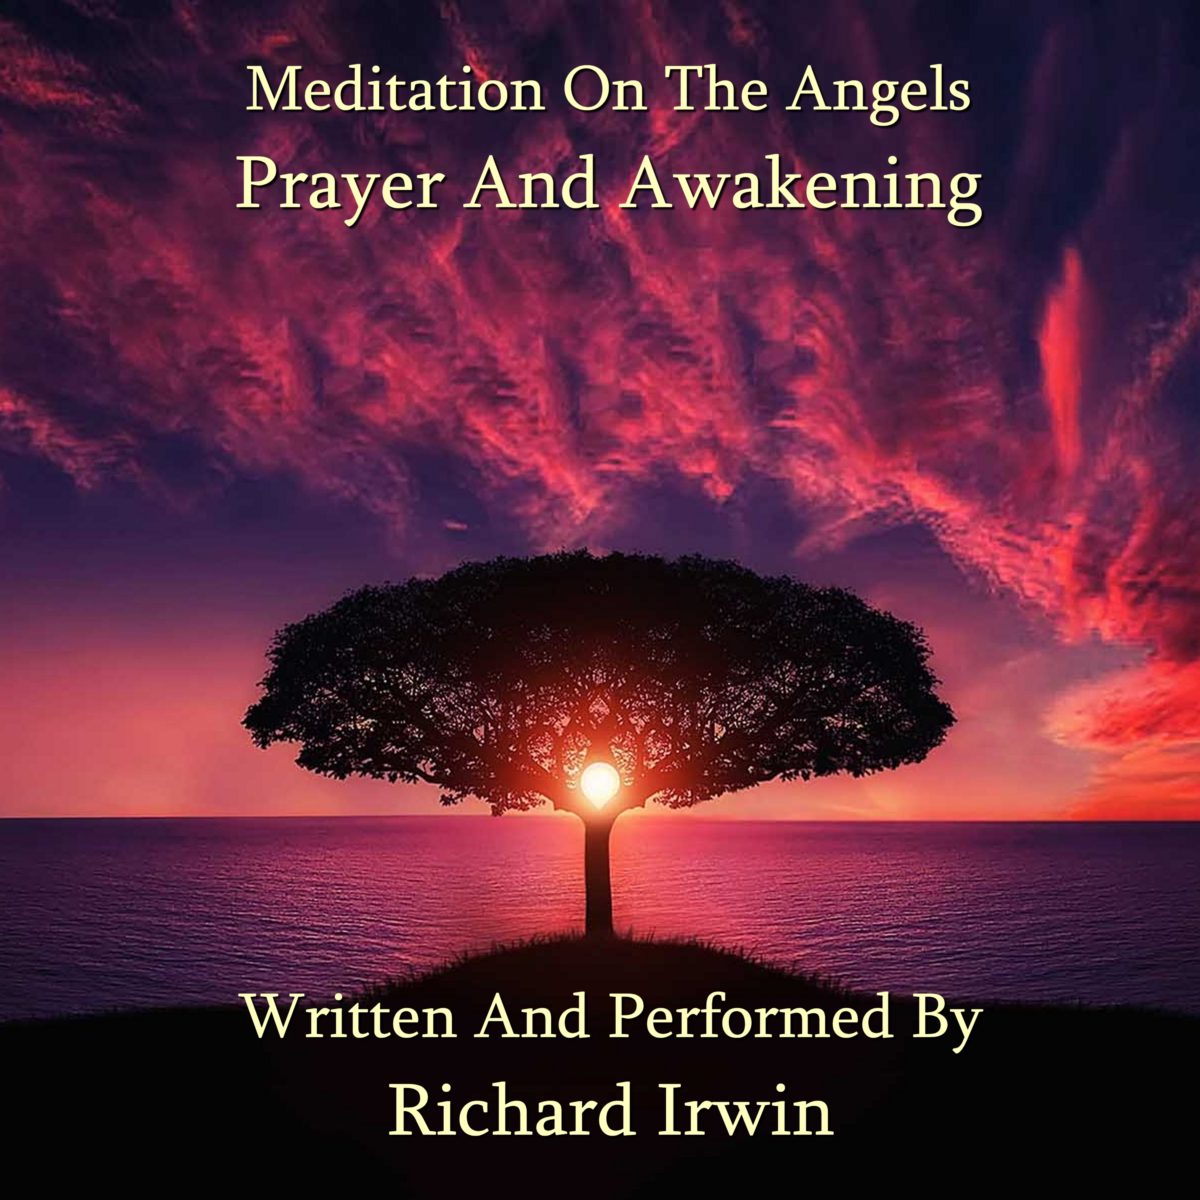 Prayer And Awakening